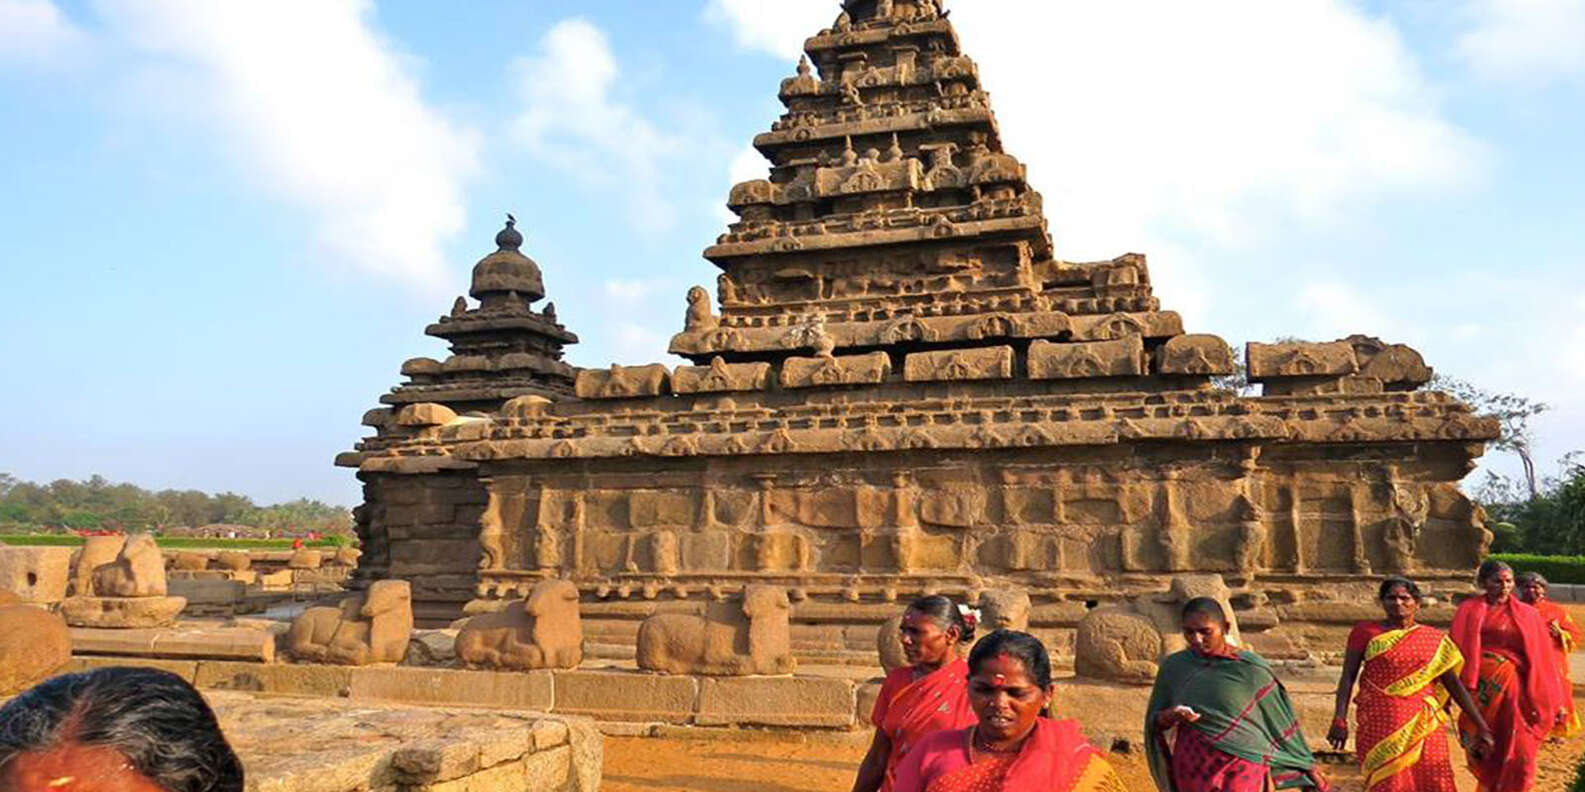 What to do in Mahabalipuram